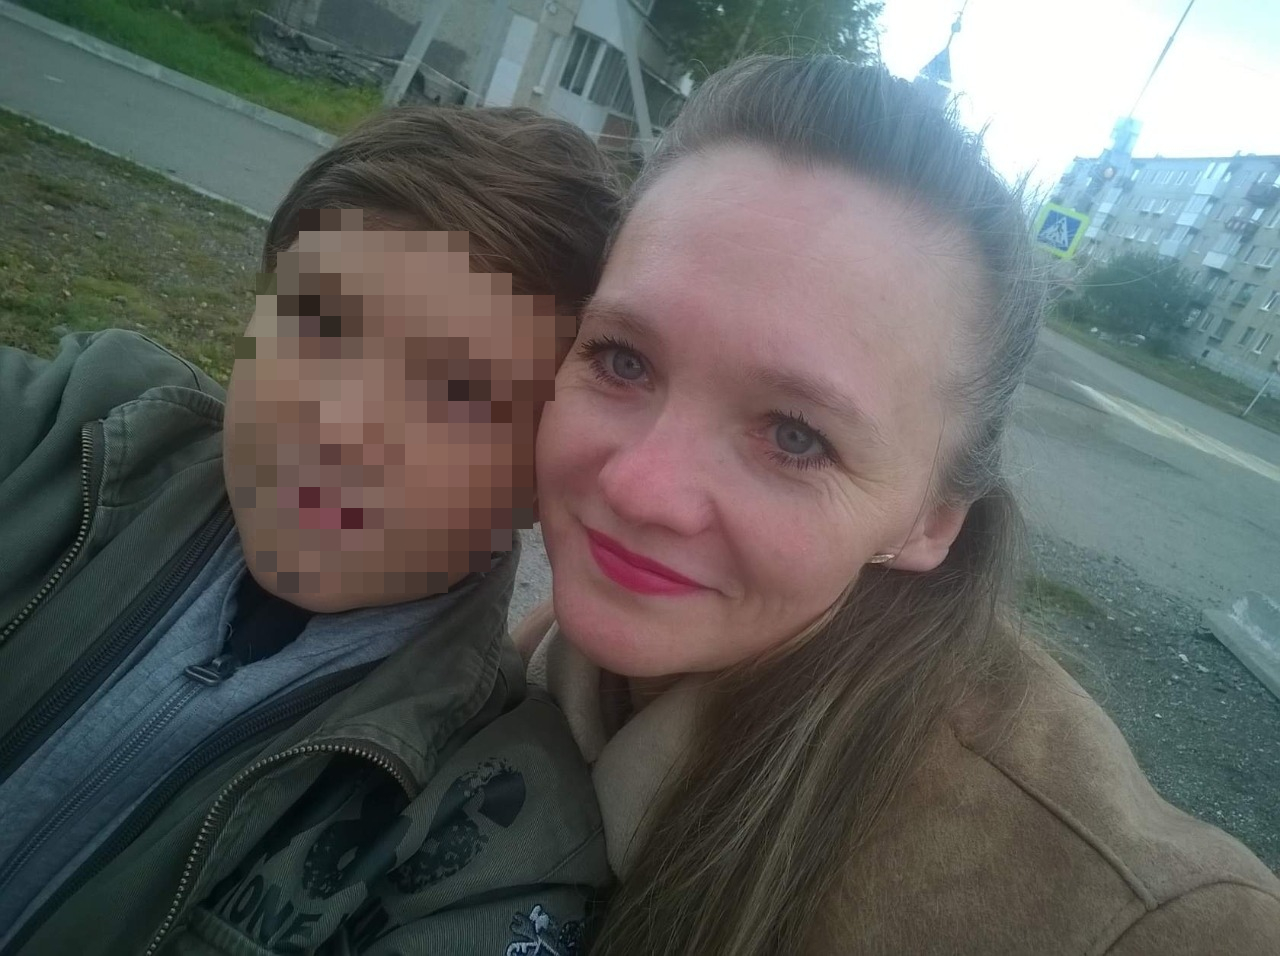 Девочка, которую нашли в шкафу в Карпинске, выжила благодаря старшему брату